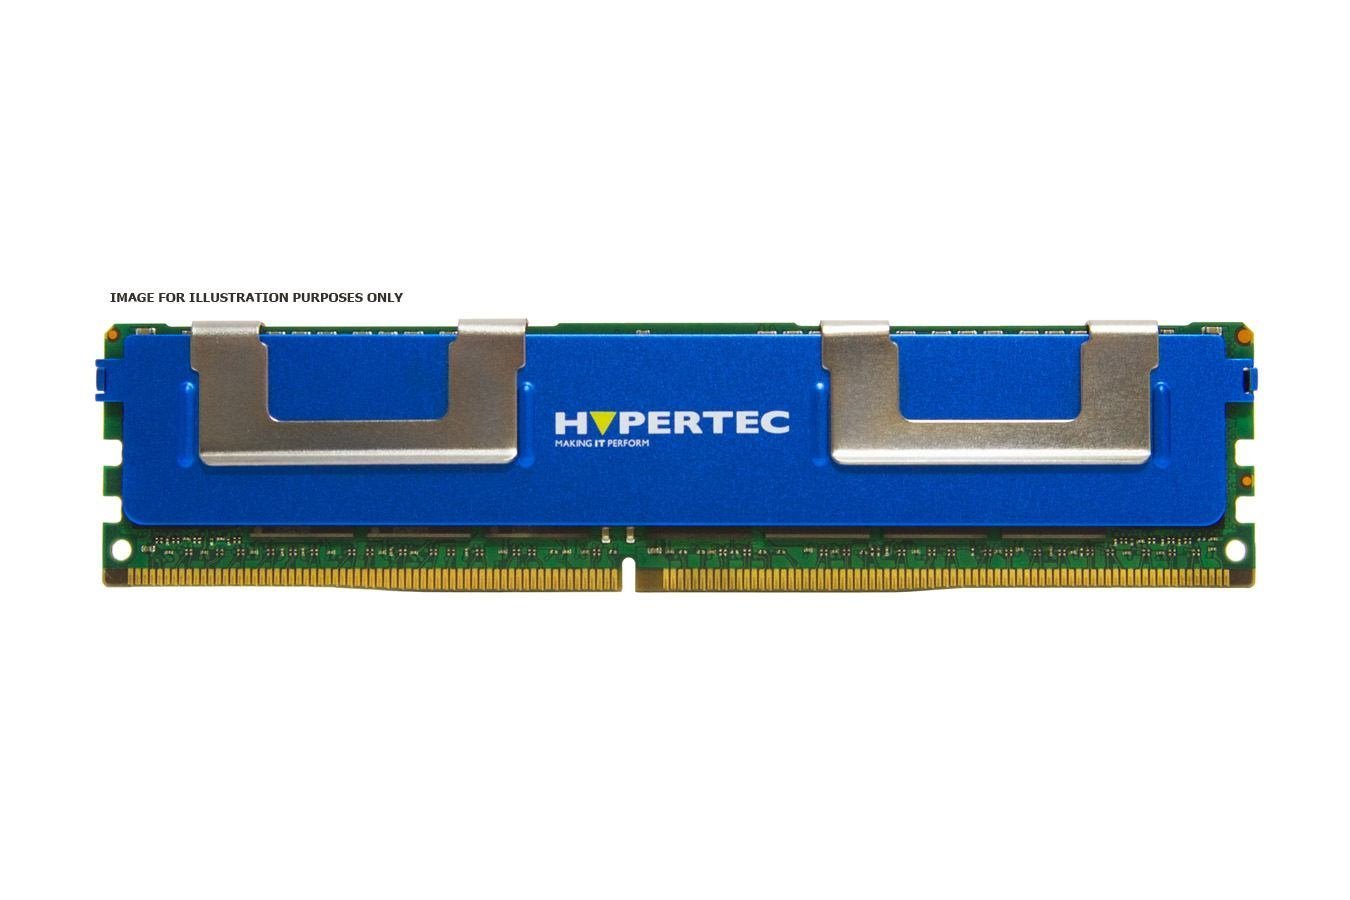 Hypertec RAM Module - 8 GB - DDR3-1333/PC3-10600 DDR3 SDRAM - 1600 MHz